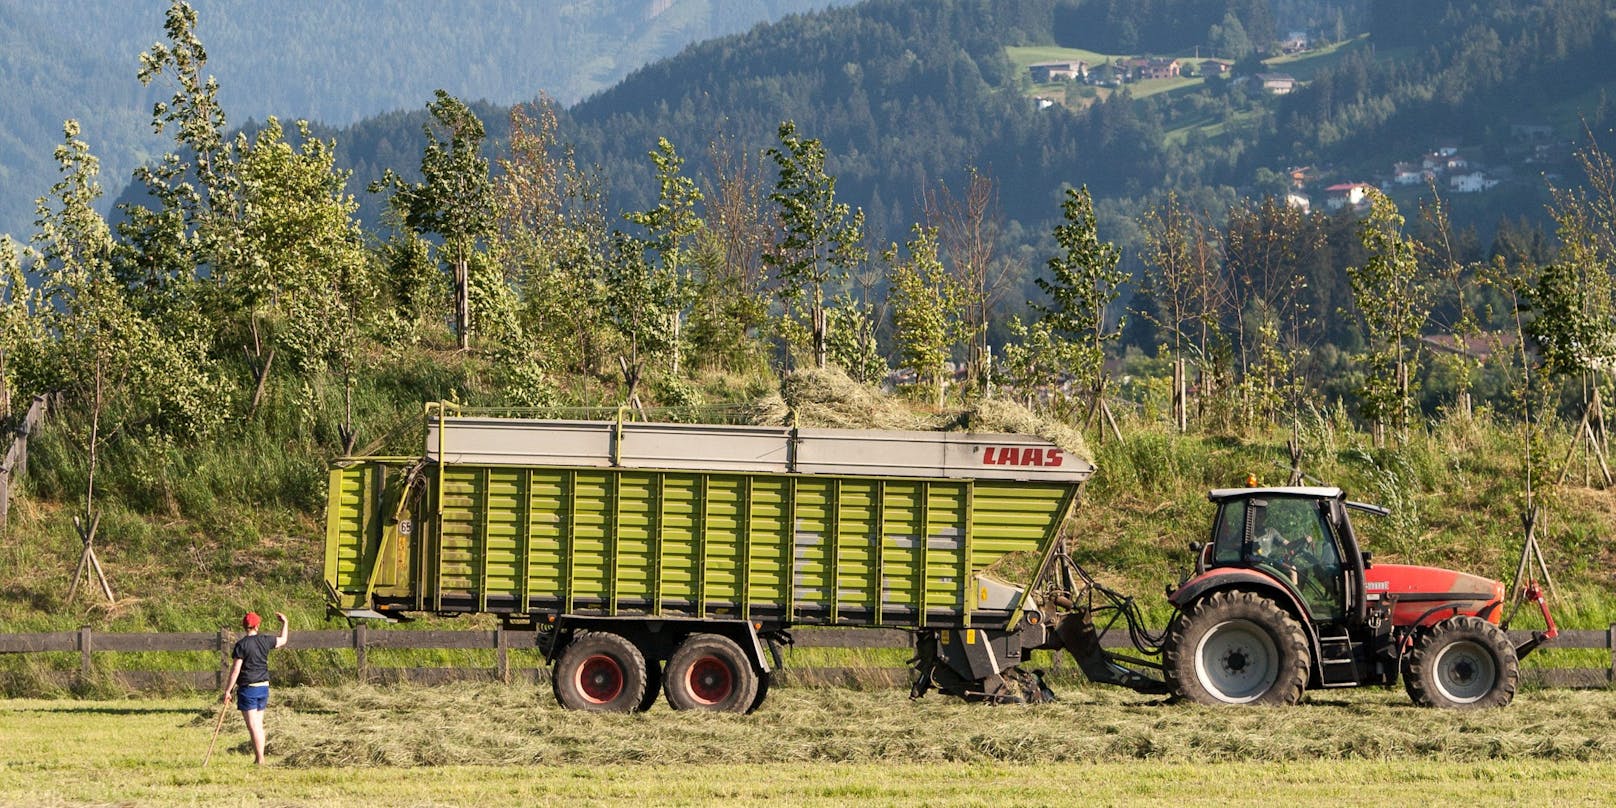 Ein Traktor samt Heuladewagen in Uderns, Tirol. (Symbolbild)